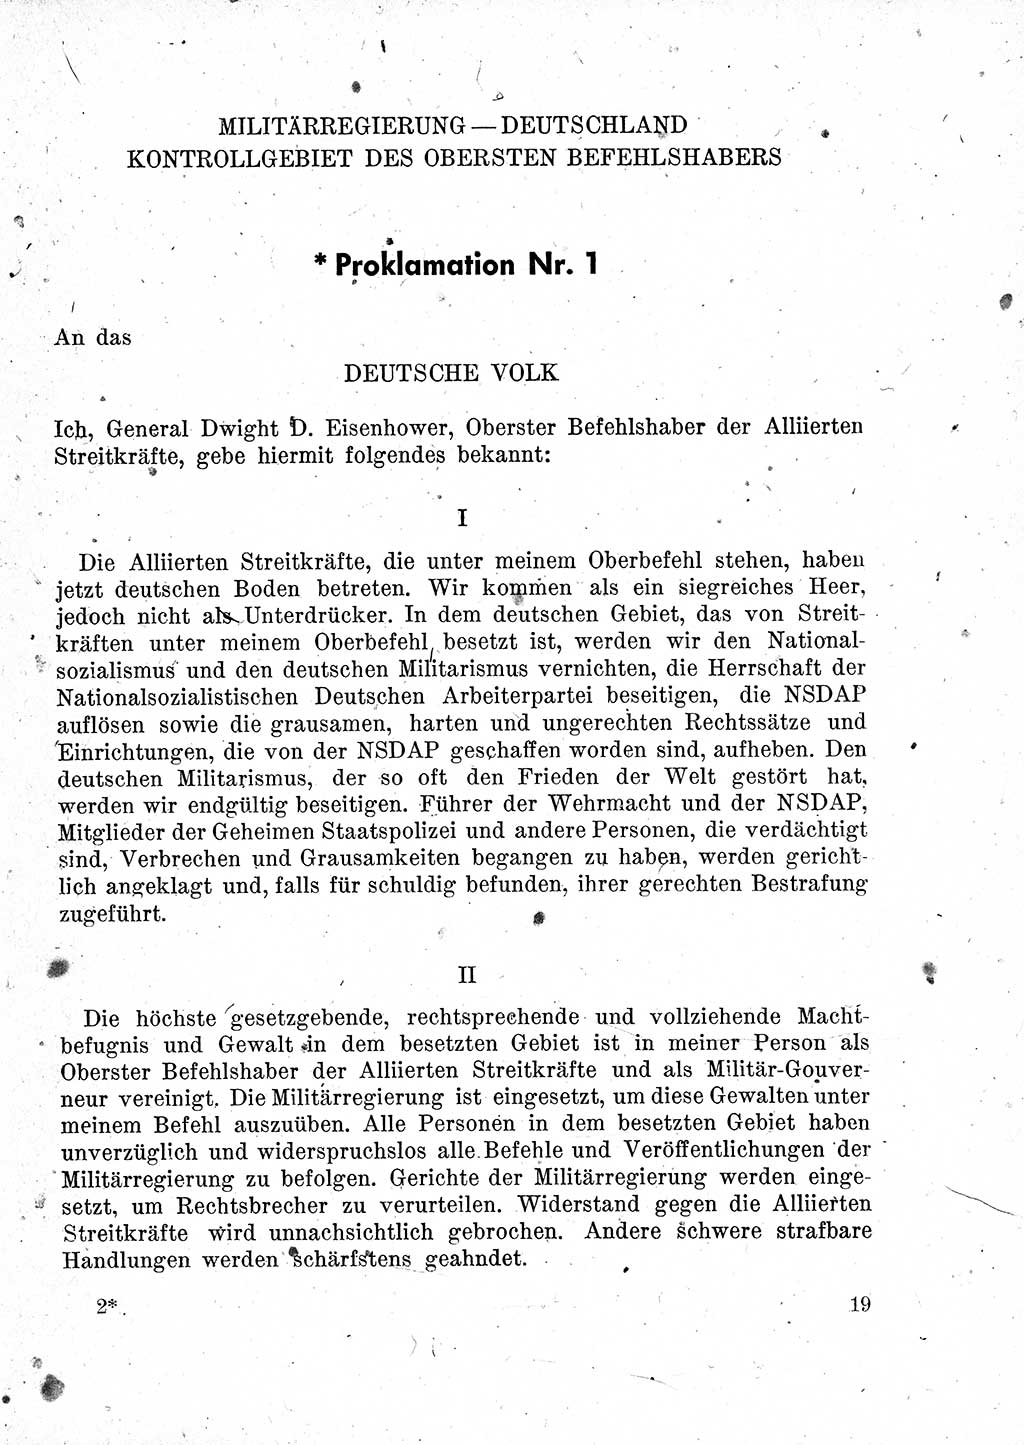 Das Recht der Besatzungsmacht (Deutschland), Proklamationen, Deklerationen, Verordnungen, Gesetze und Bekanntmachungen 1947, Seite 19 (R. Bes. Dtl. 1947, S. 19)